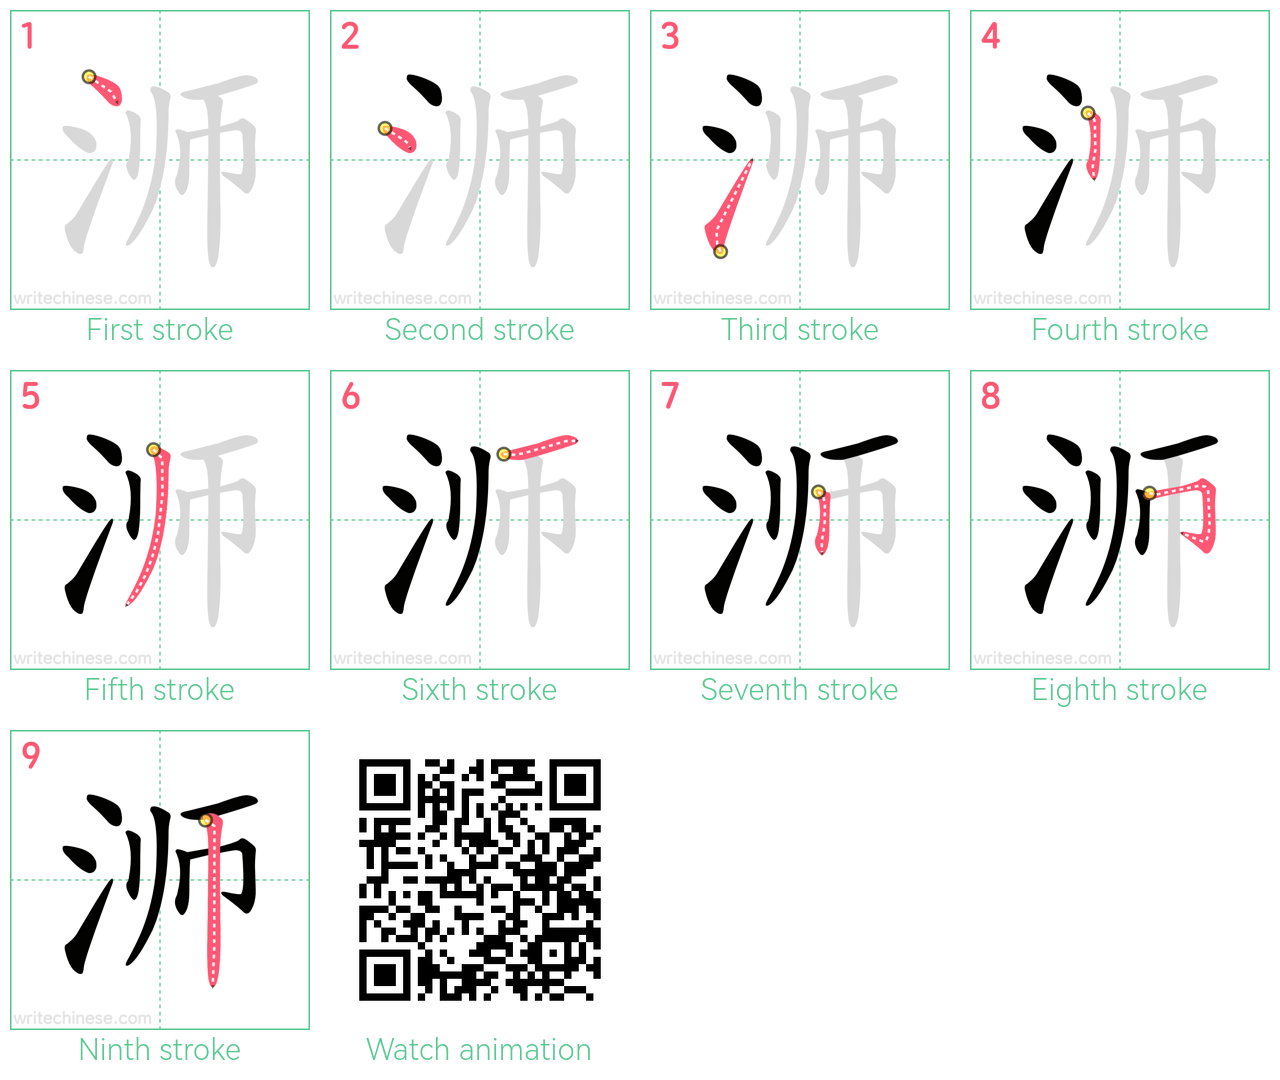 浉 step-by-step stroke order diagrams